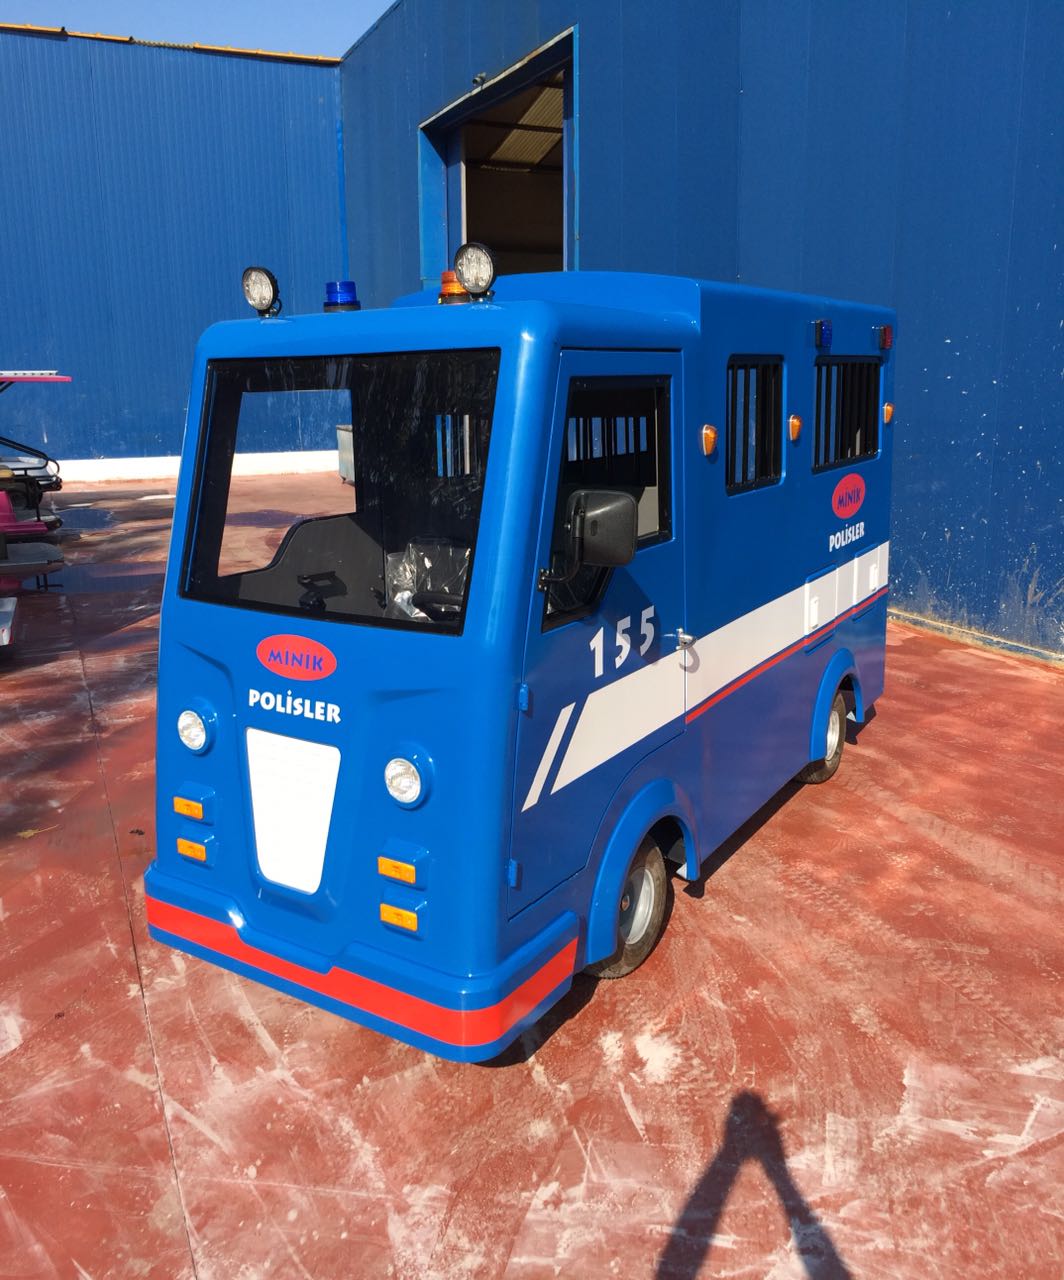 سيارة شرطة لتحميل الاطفال تعمل بالبطارية CLEANVAC